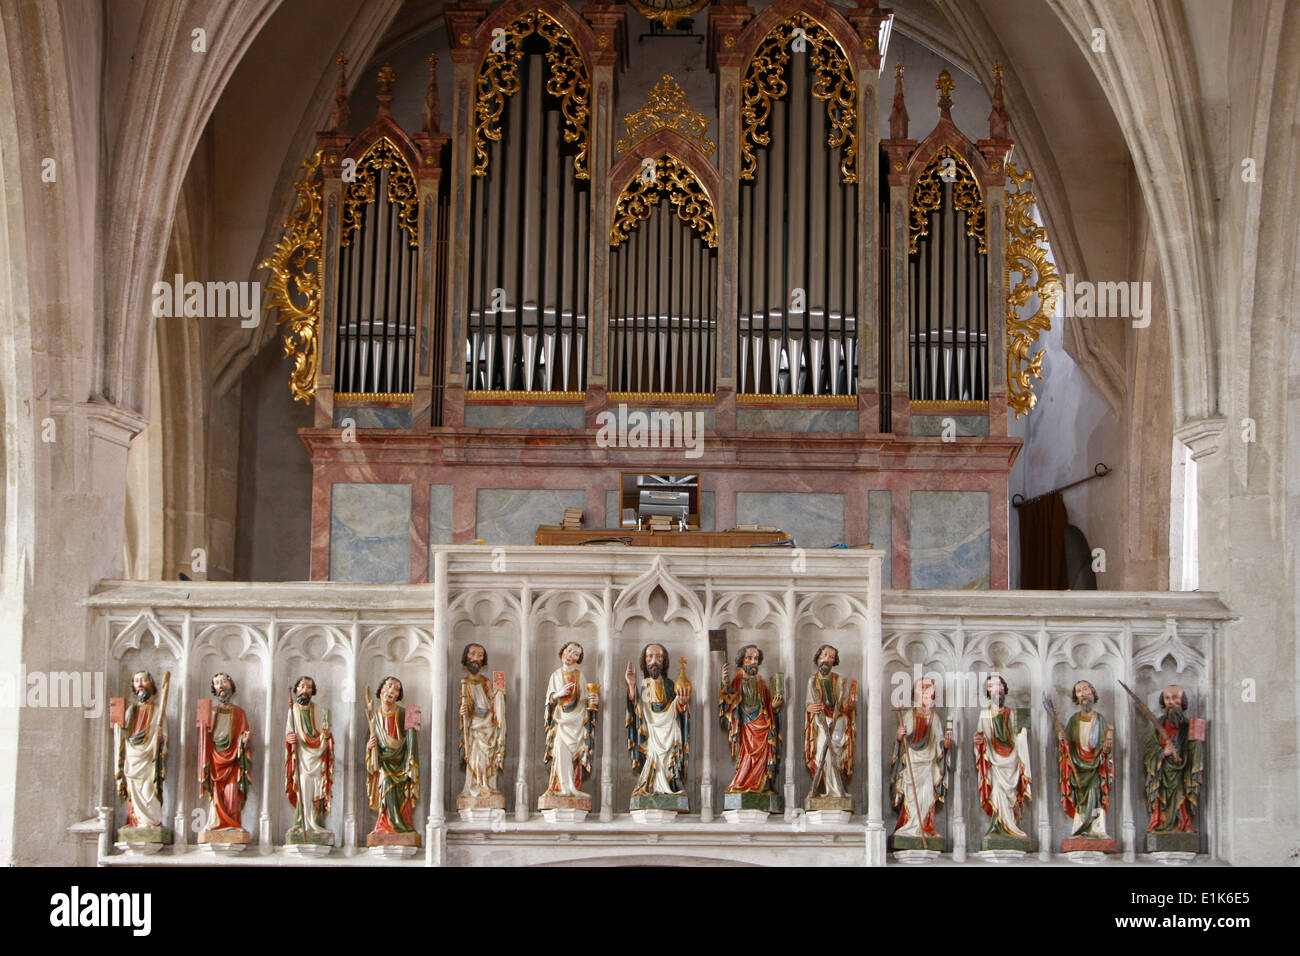 Spitz-katholische Kirche.  Die Orgelempore ist geschmückt mit Statuen von Christus und seinen Aposteln (etwa 1420). Stockfoto